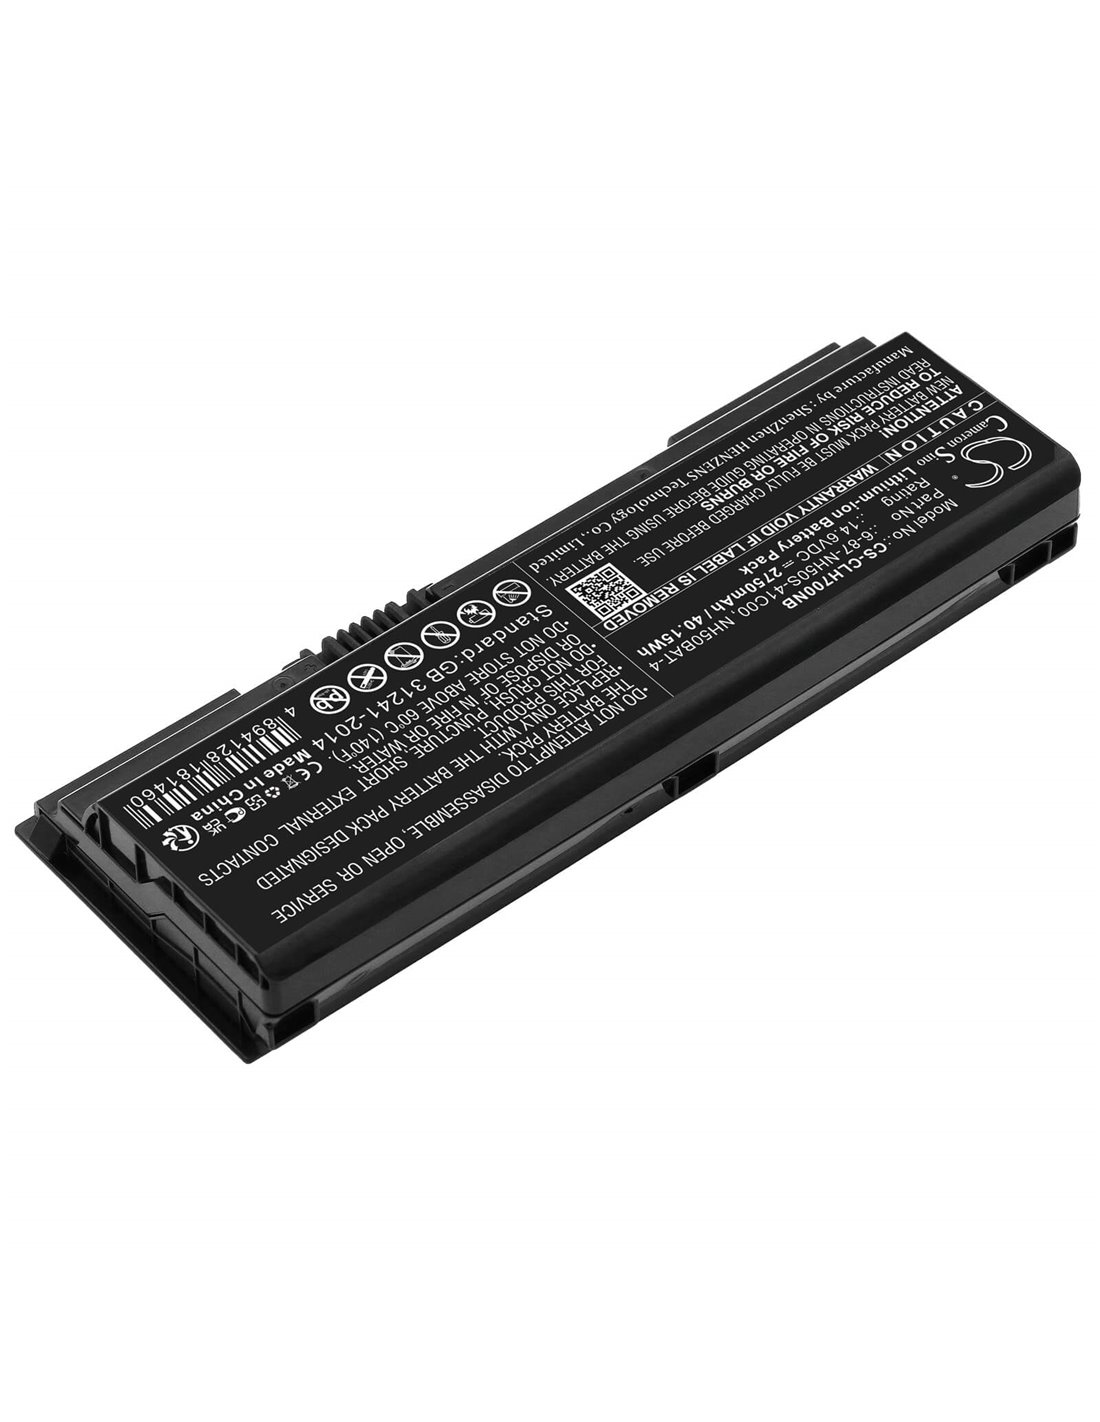 14.6V, Li-ion, 2750mAh, Battery fits Mifcom Eg5 I7-gtx 1660 Ti(nh55rcq), 40.15Wh